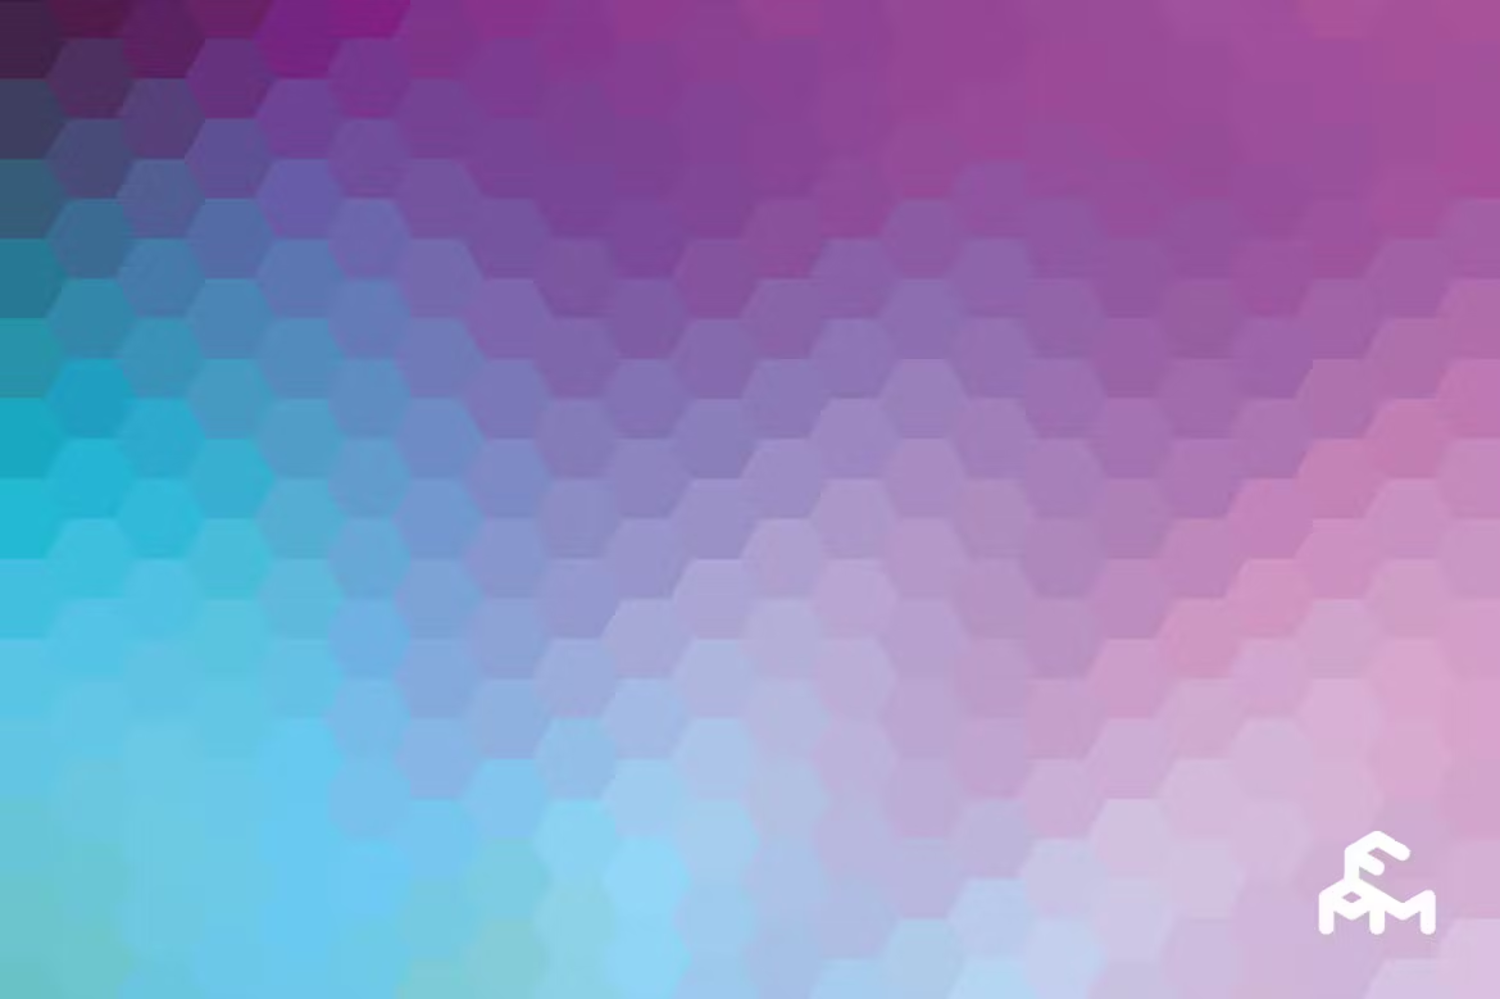 6088 多用途高清六边形背景素材-Hexagonal Backgrounds